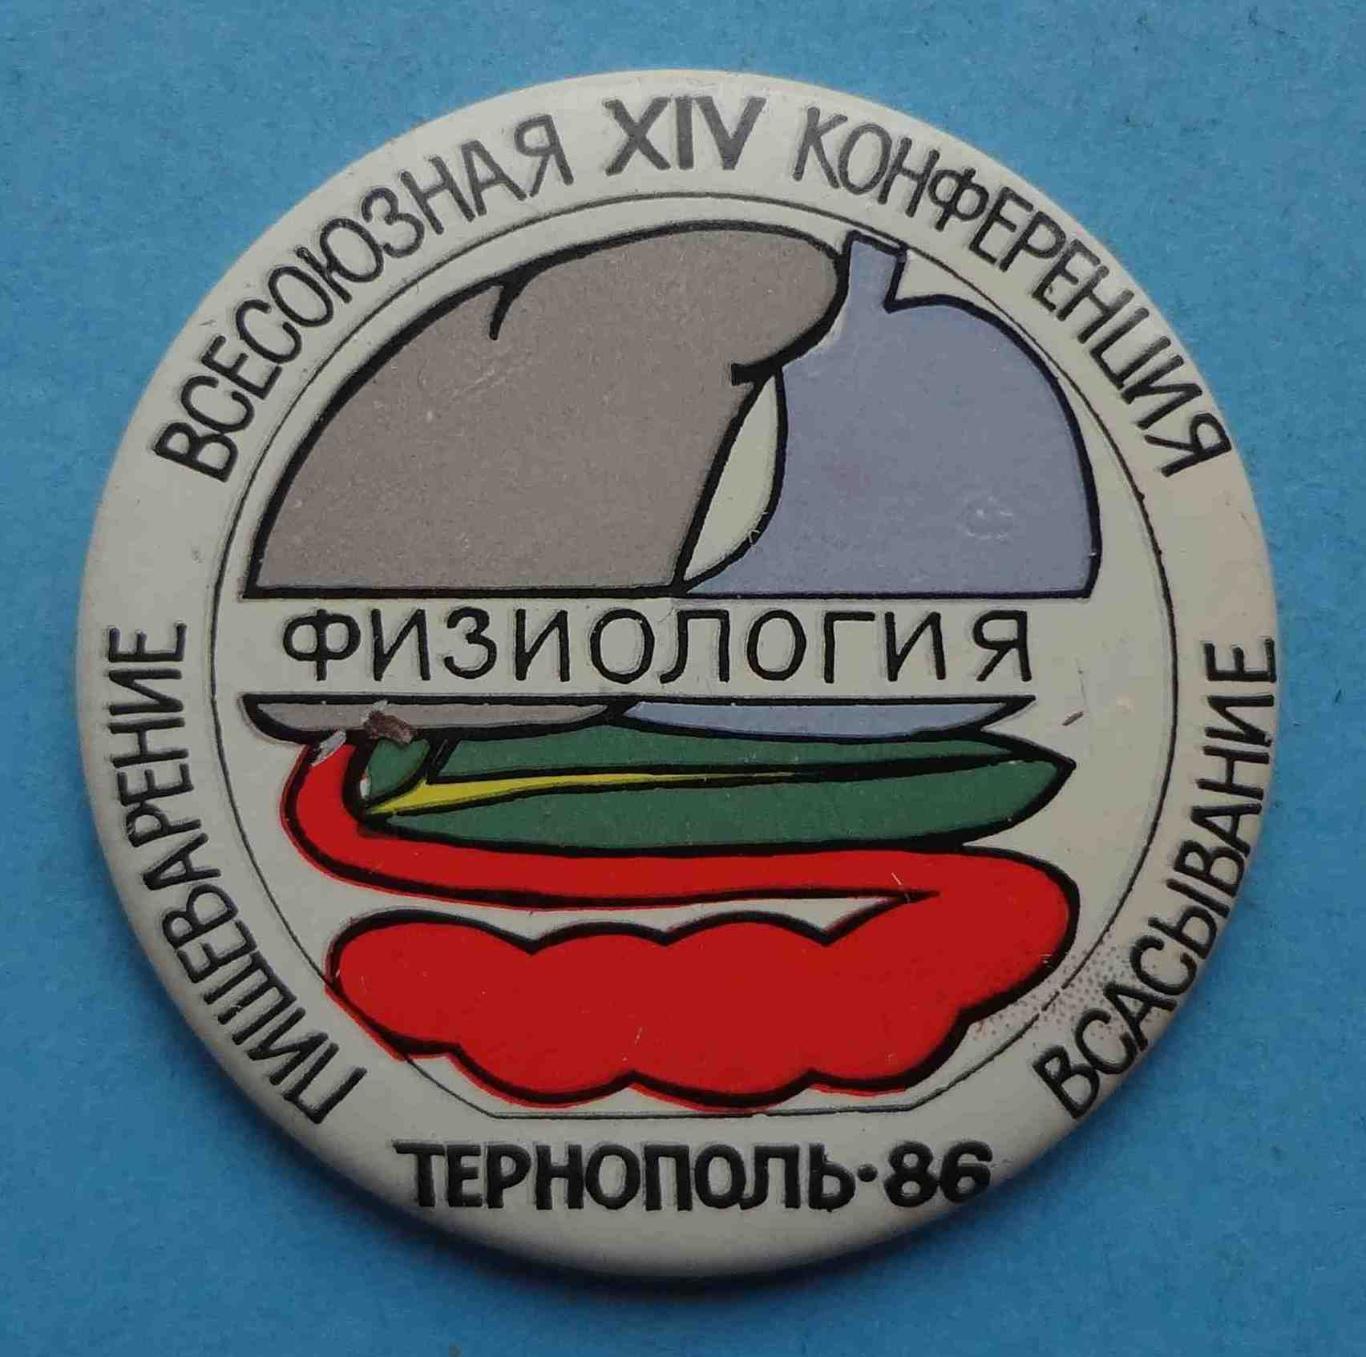 14 Всесоюзная конференция Пищеварение физиология всасывание Тернополь 1986 (8)